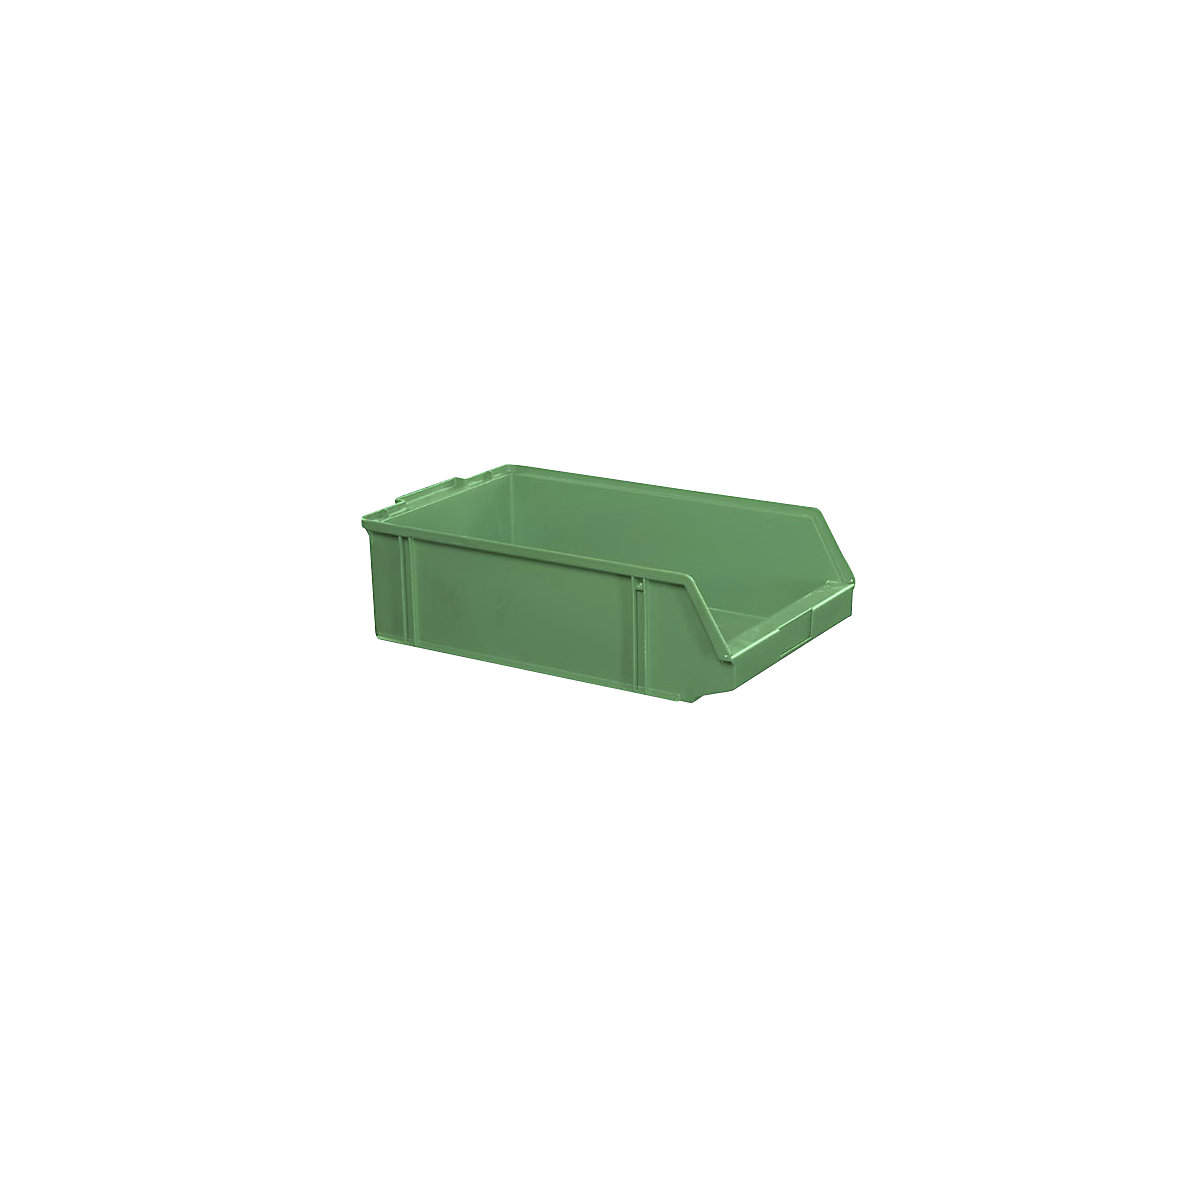 Sichtlagerkasten aus Polystyrol, Länge 500 mm, BxH 308 x 145 mm, VE 7 Stk, grün-8